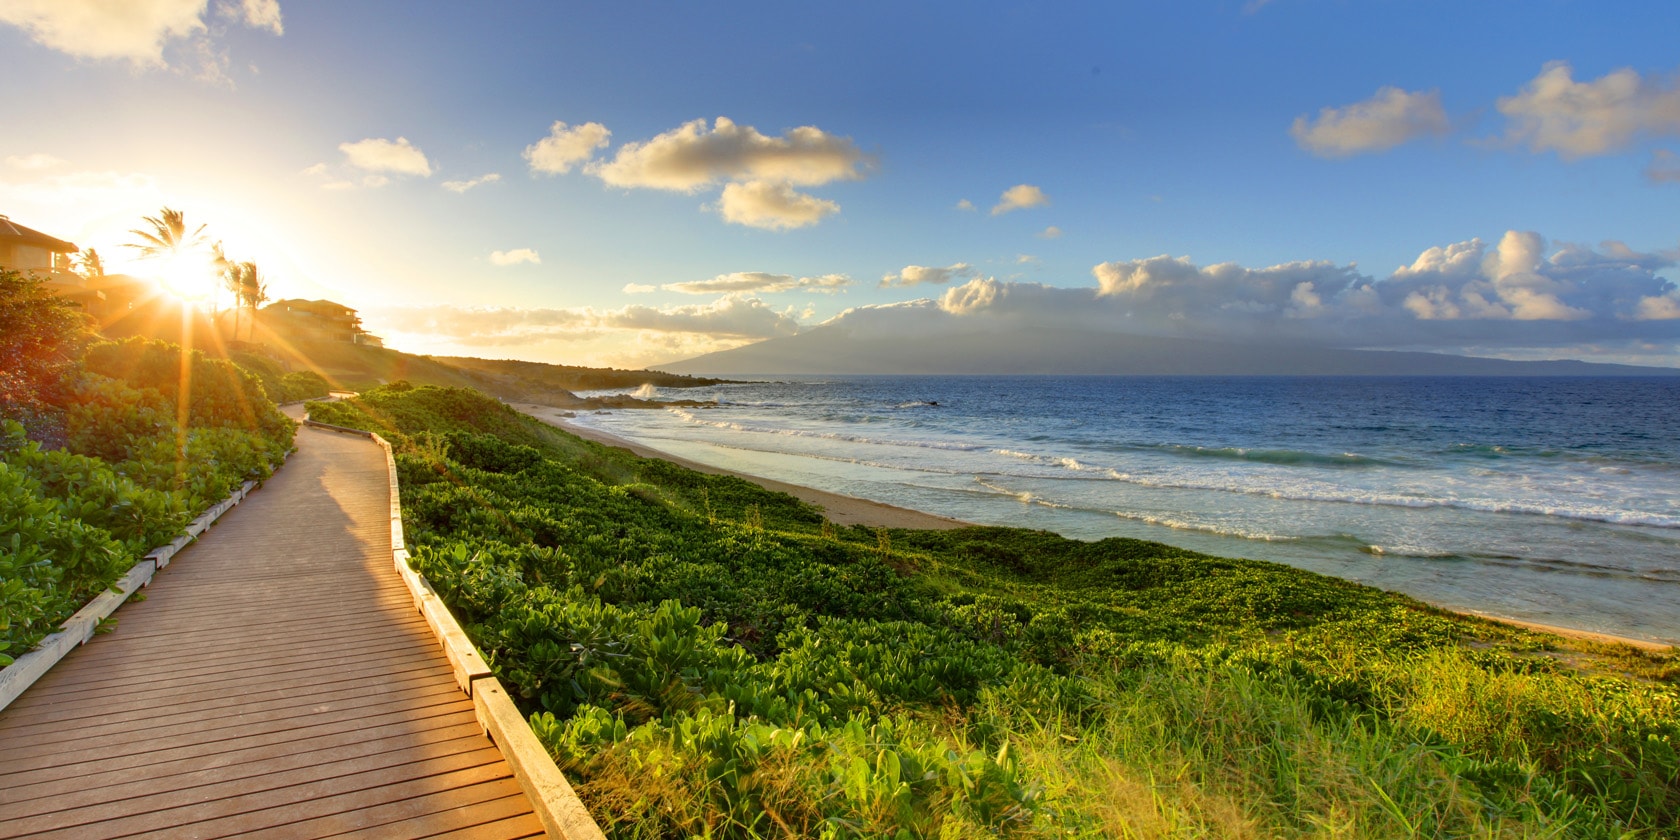 mirando el paseo que transcurre paralelo a la playa del océano mientras se pone el sol